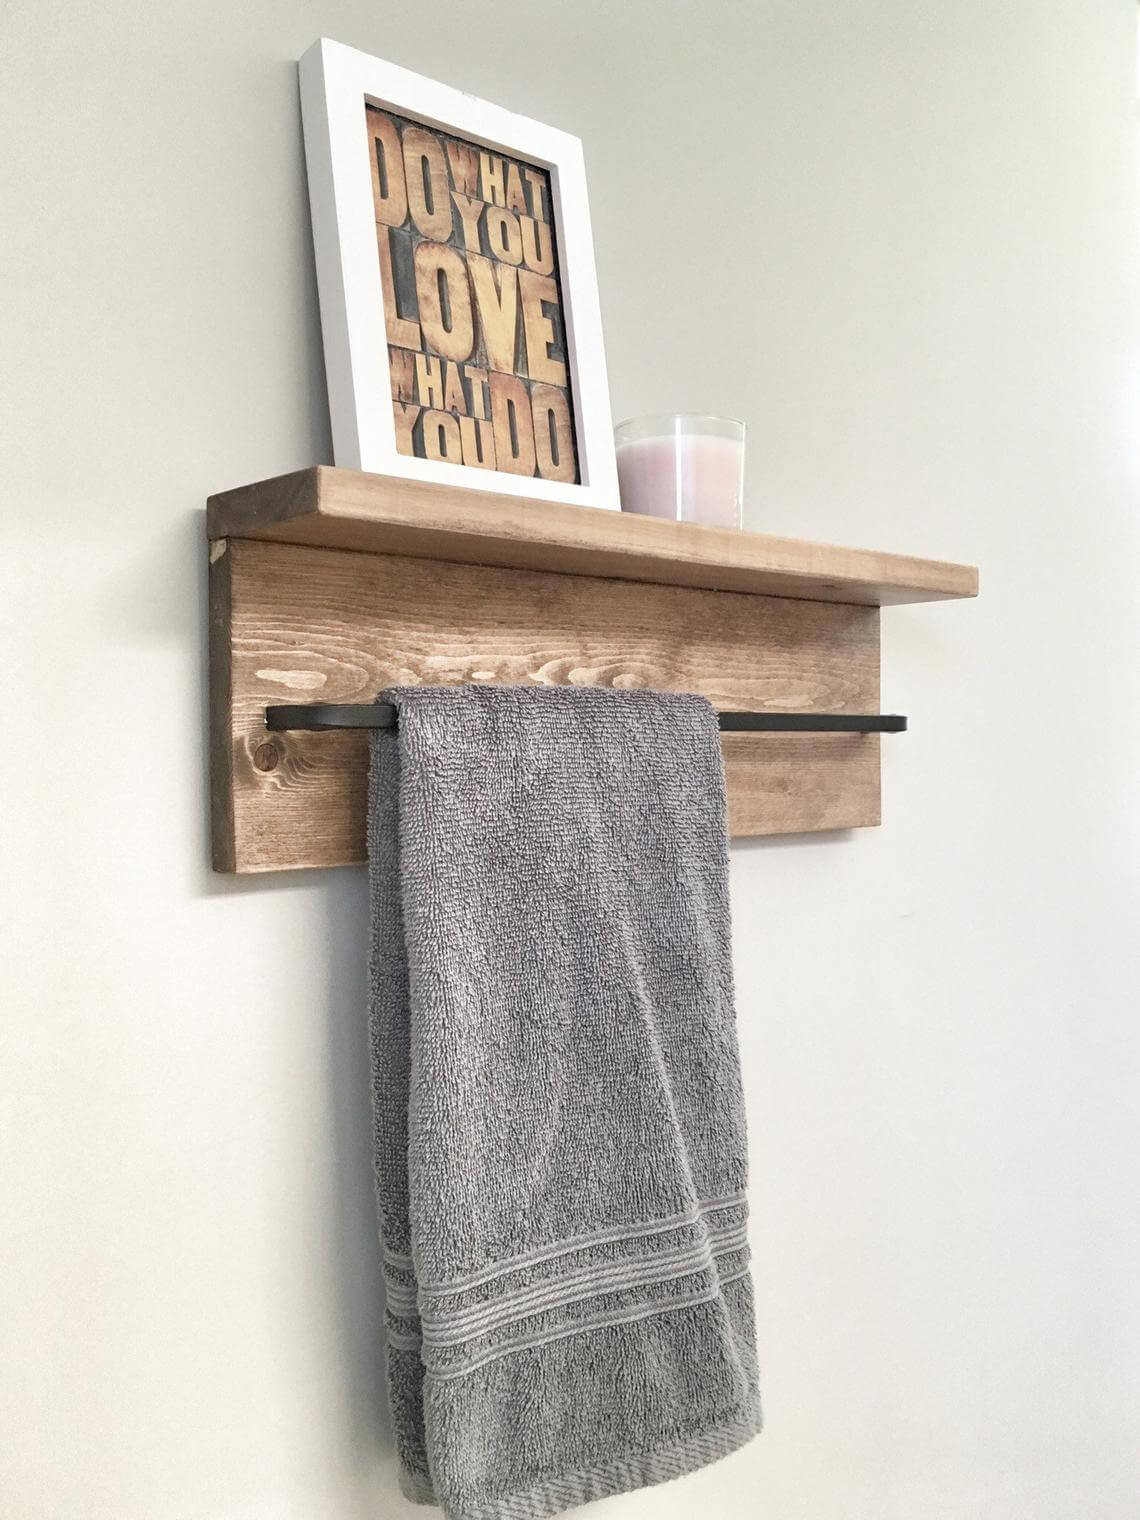 Basic Wood Shelf with Wrought Iron Bar